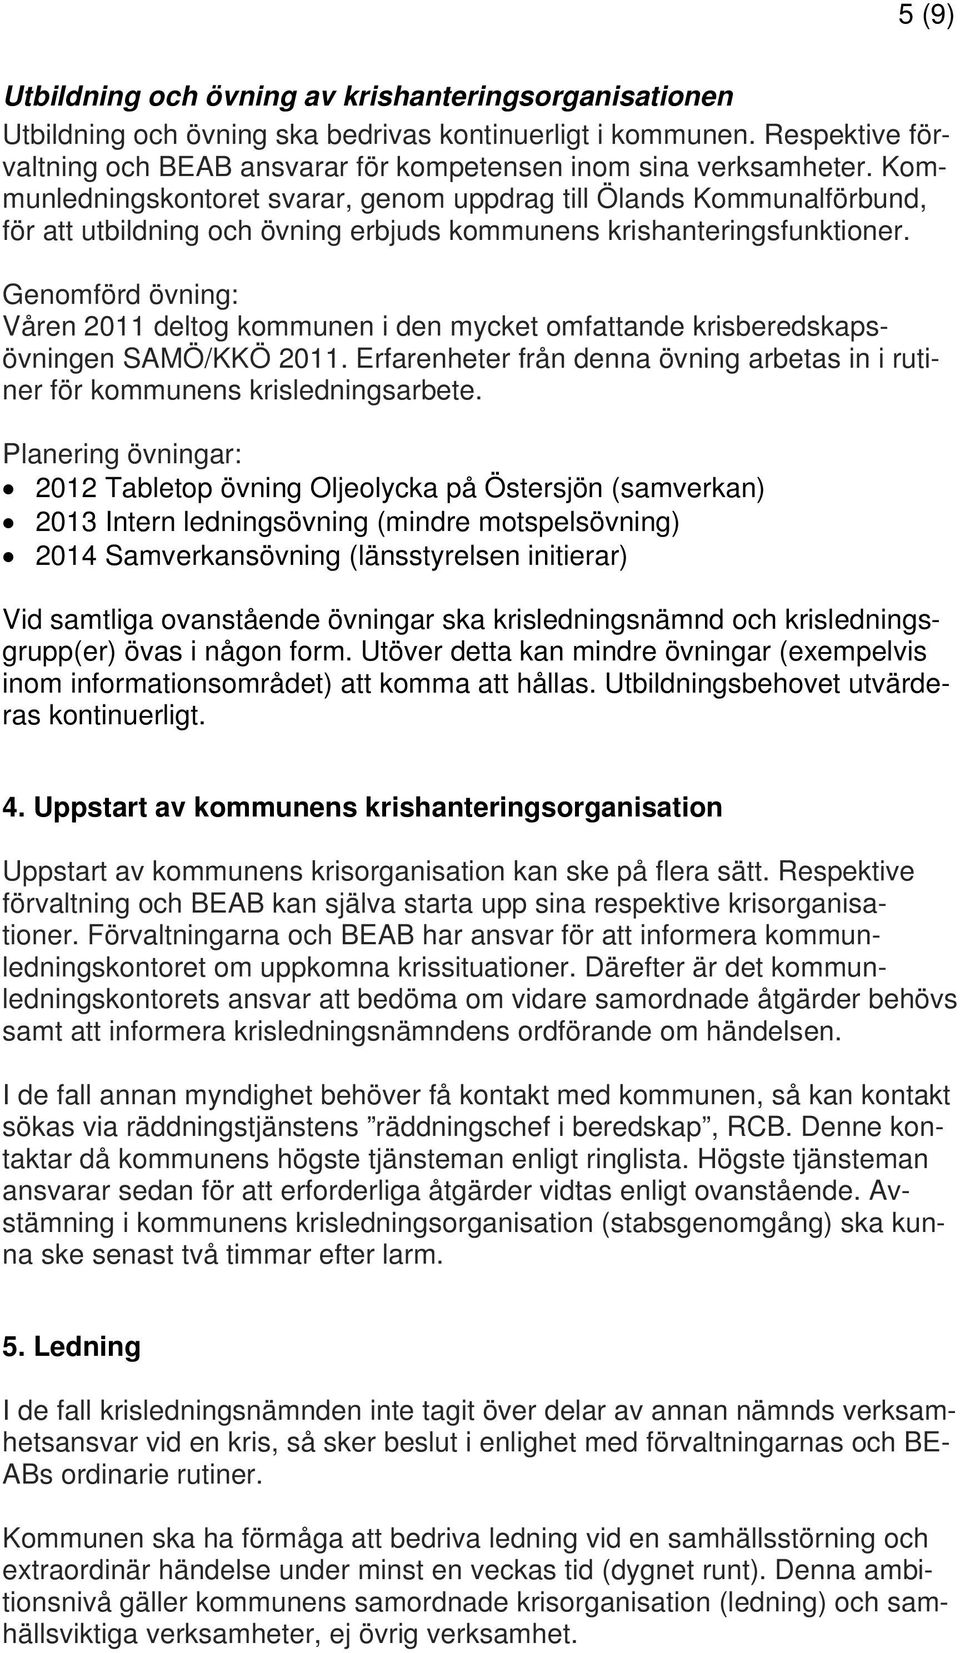 Kommunledningskontoret svarar, genom uppdrag till Ölands Kommunalförbund, för att utbildning och övning erbjuds kommunens krishanteringsfunktioner.